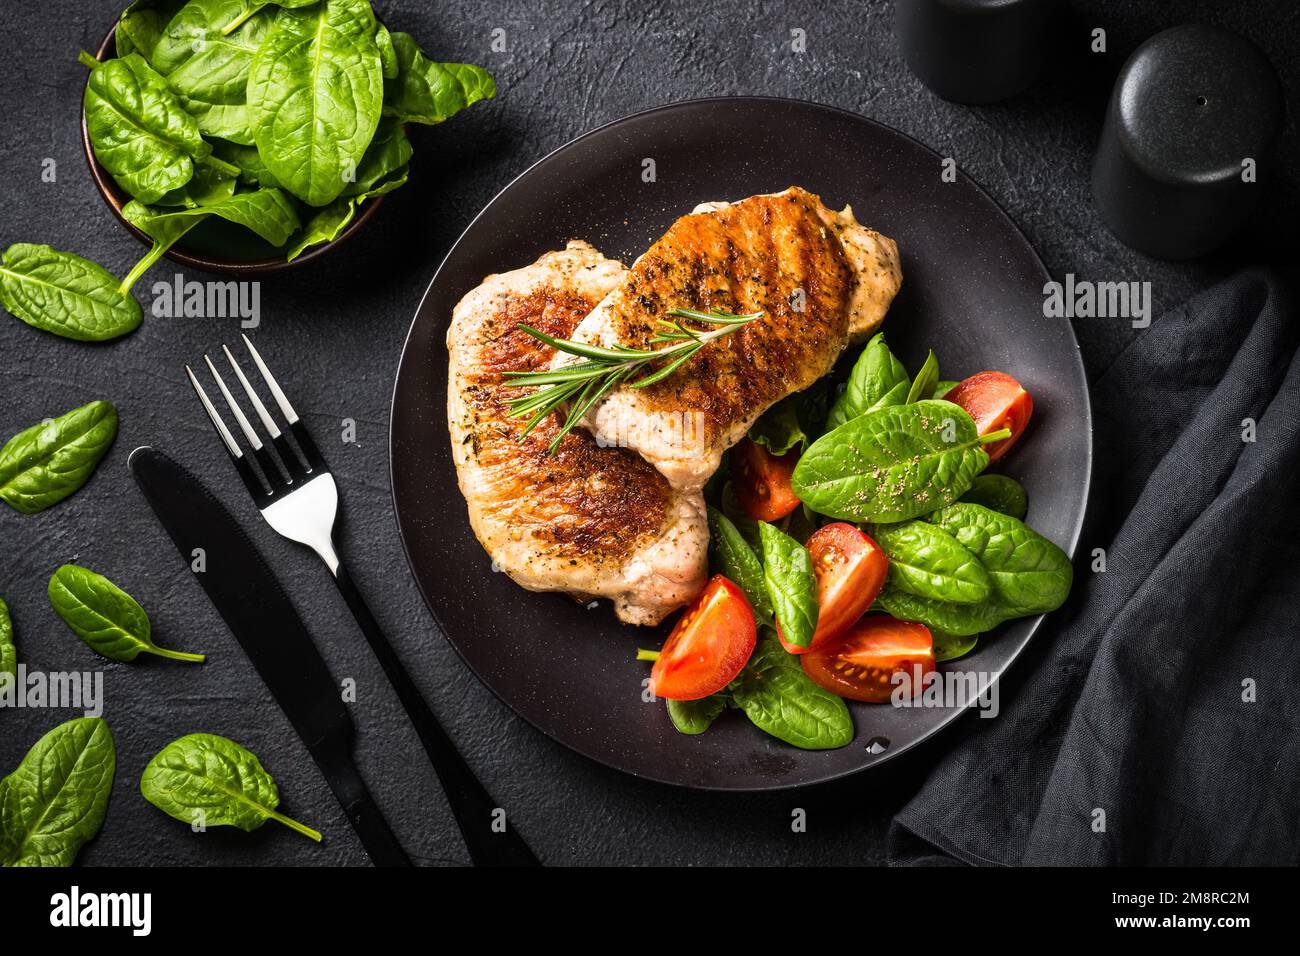 Gegrilltes Fleisch. Schweinesteaks mit frischem Salat. Draufsicht Bild am schwarzen Tisch. keto Diät Mittagessen. Stockfoto